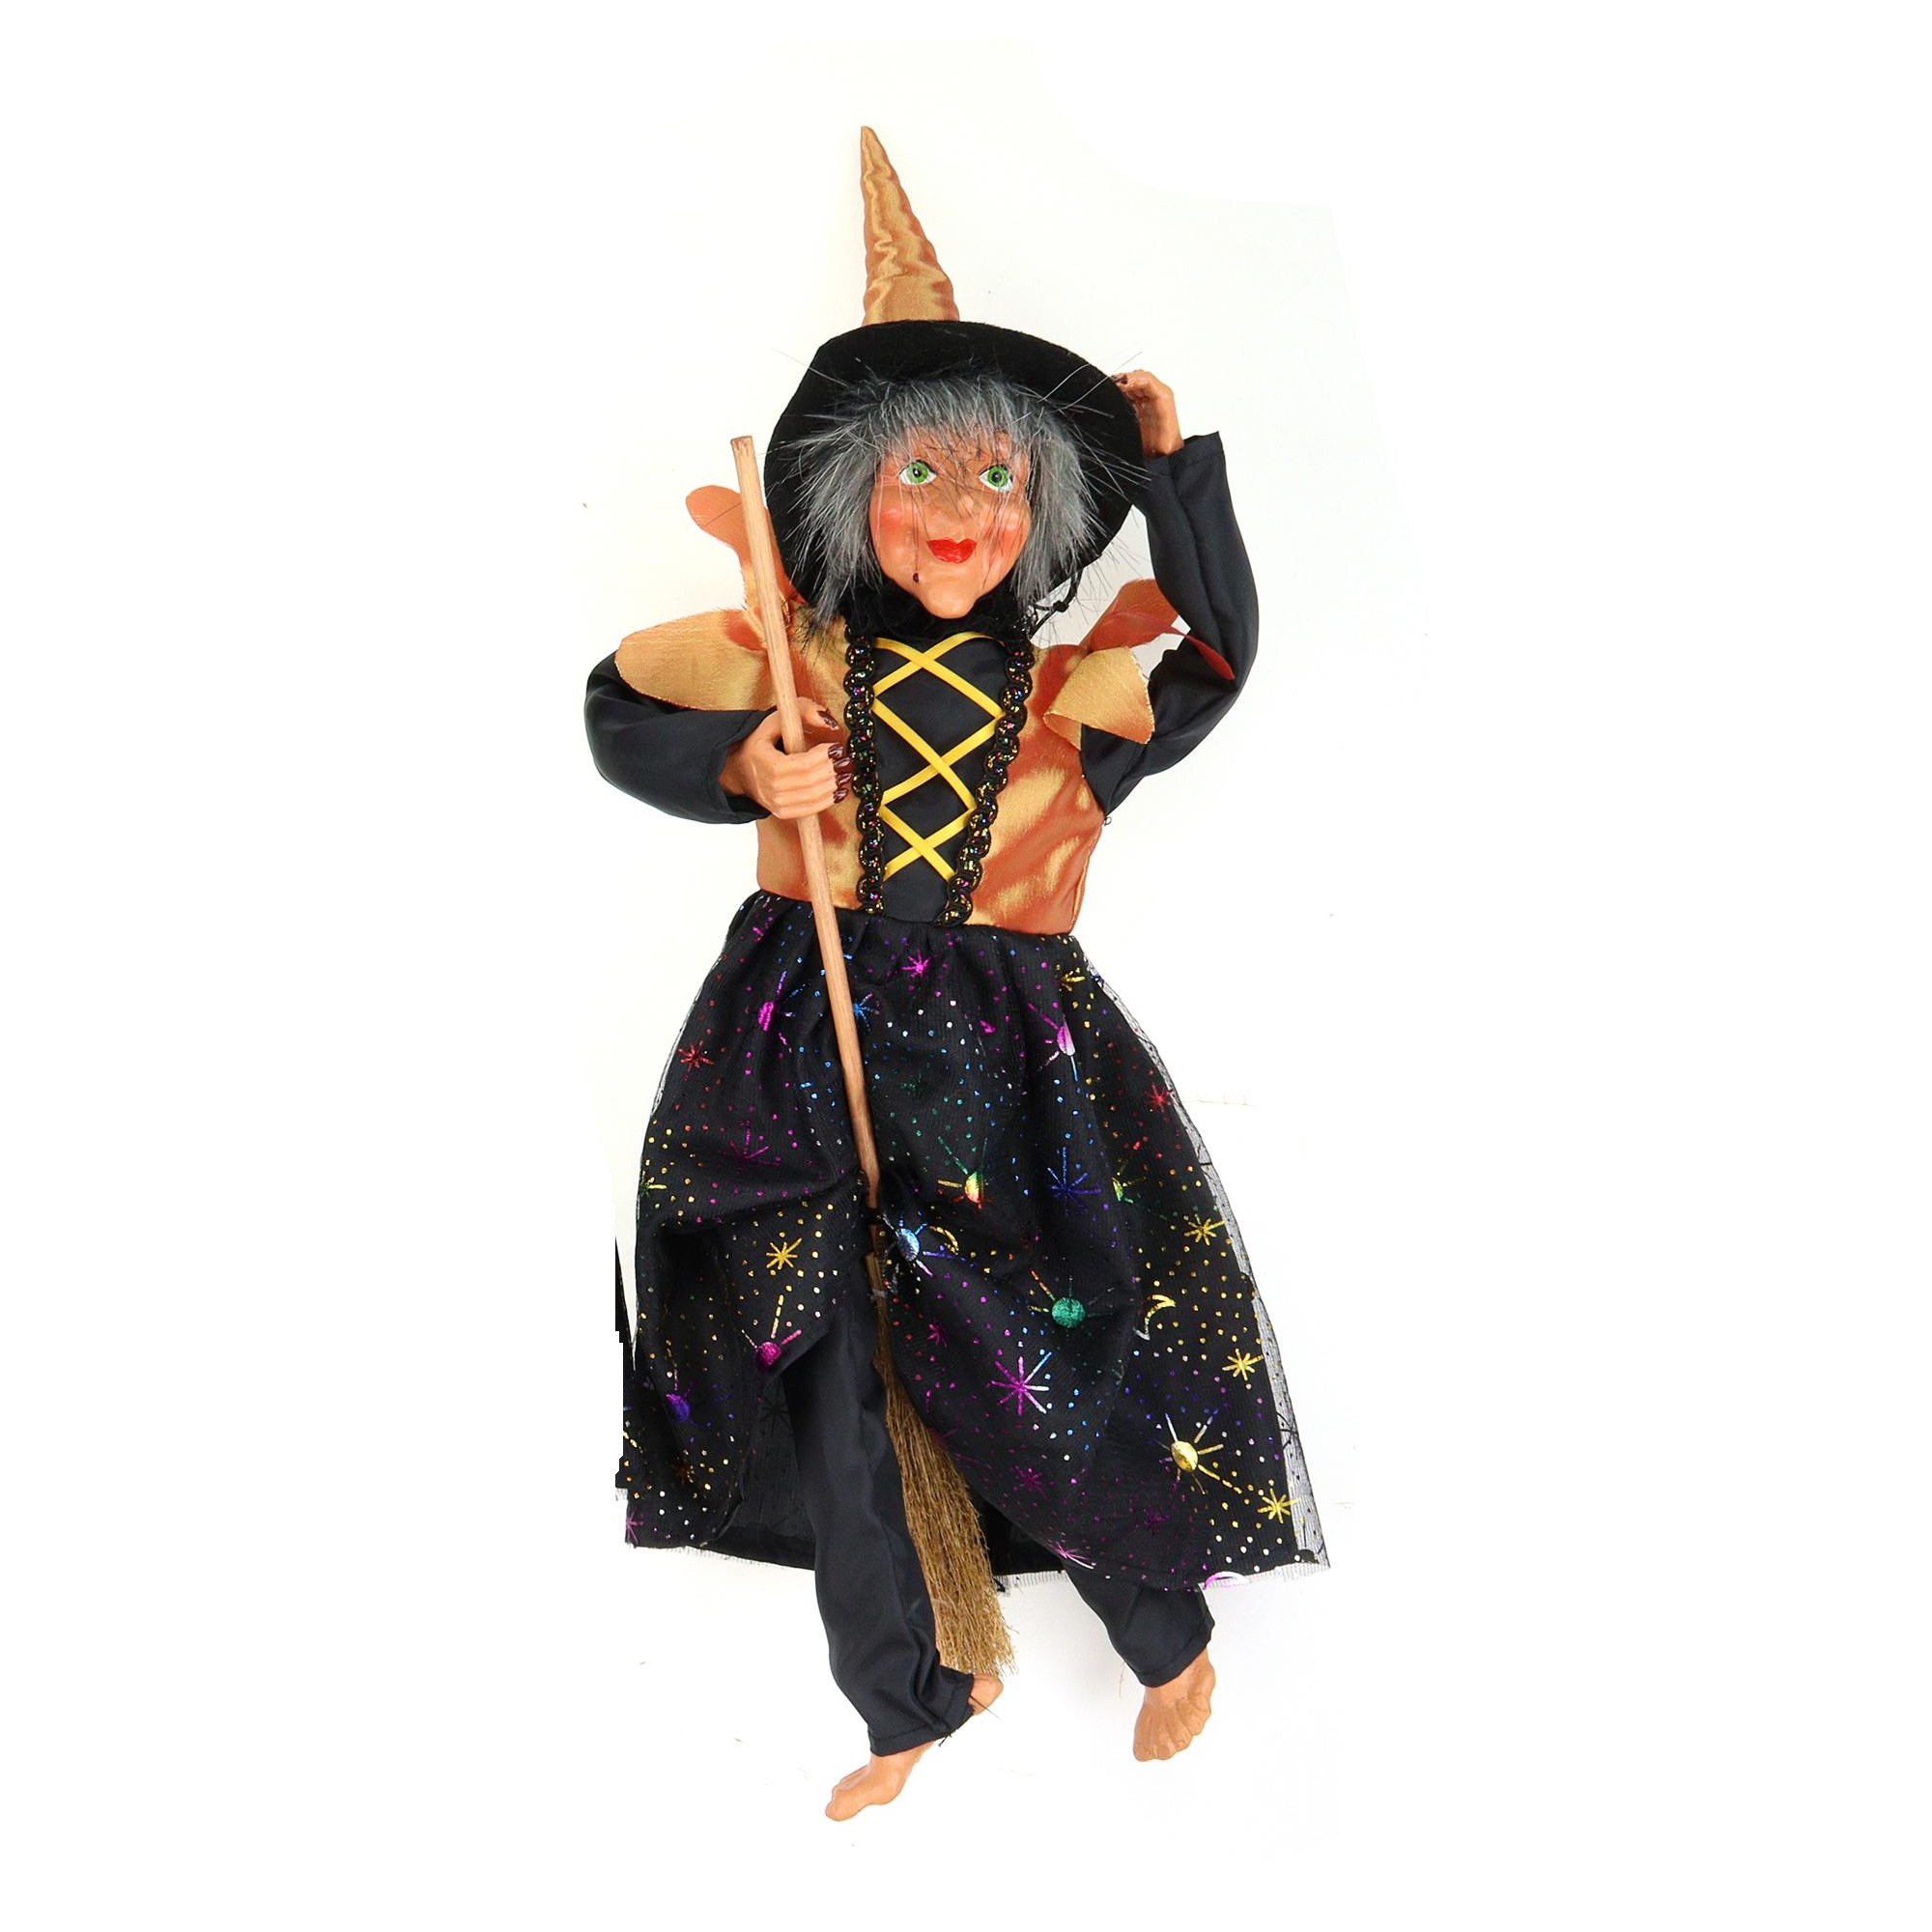 Creation decoratie heksen pop vliegend op bezem 40 cm zwart-oranje Halloween versiering